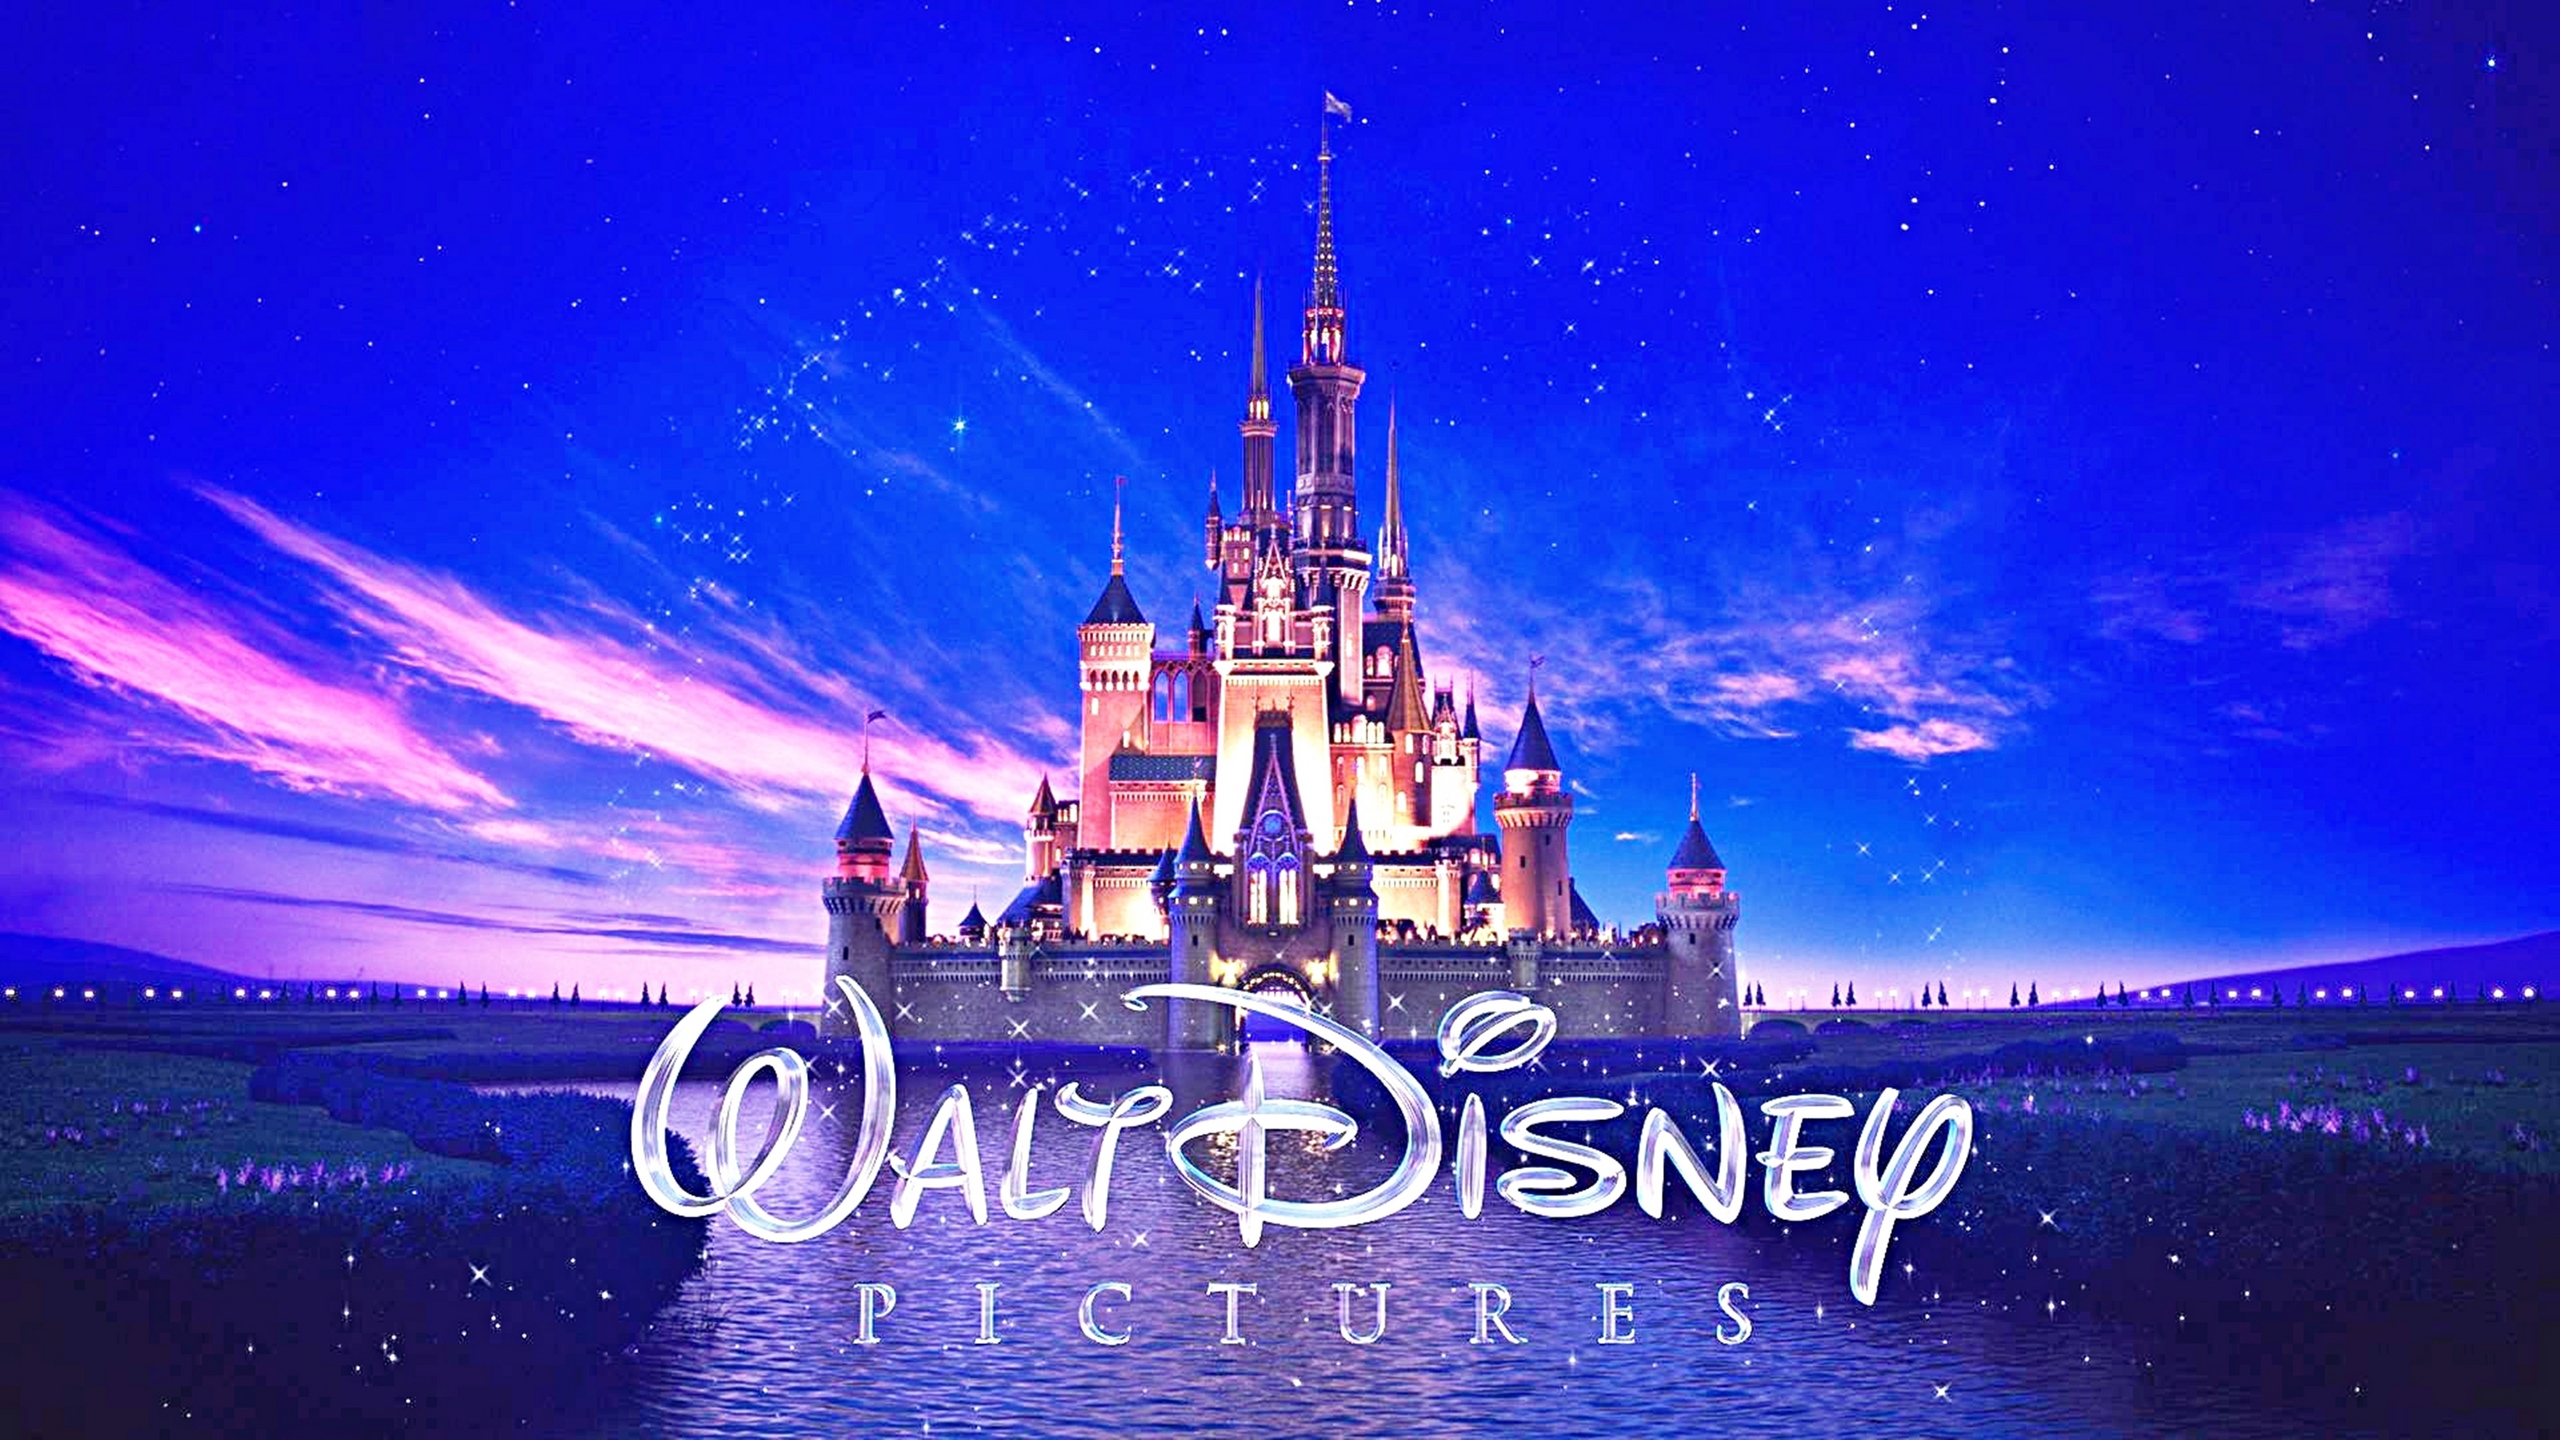 Disney castle 1080P 2K 4K 5K HD wallpapers free download  Wallpaper  Flare